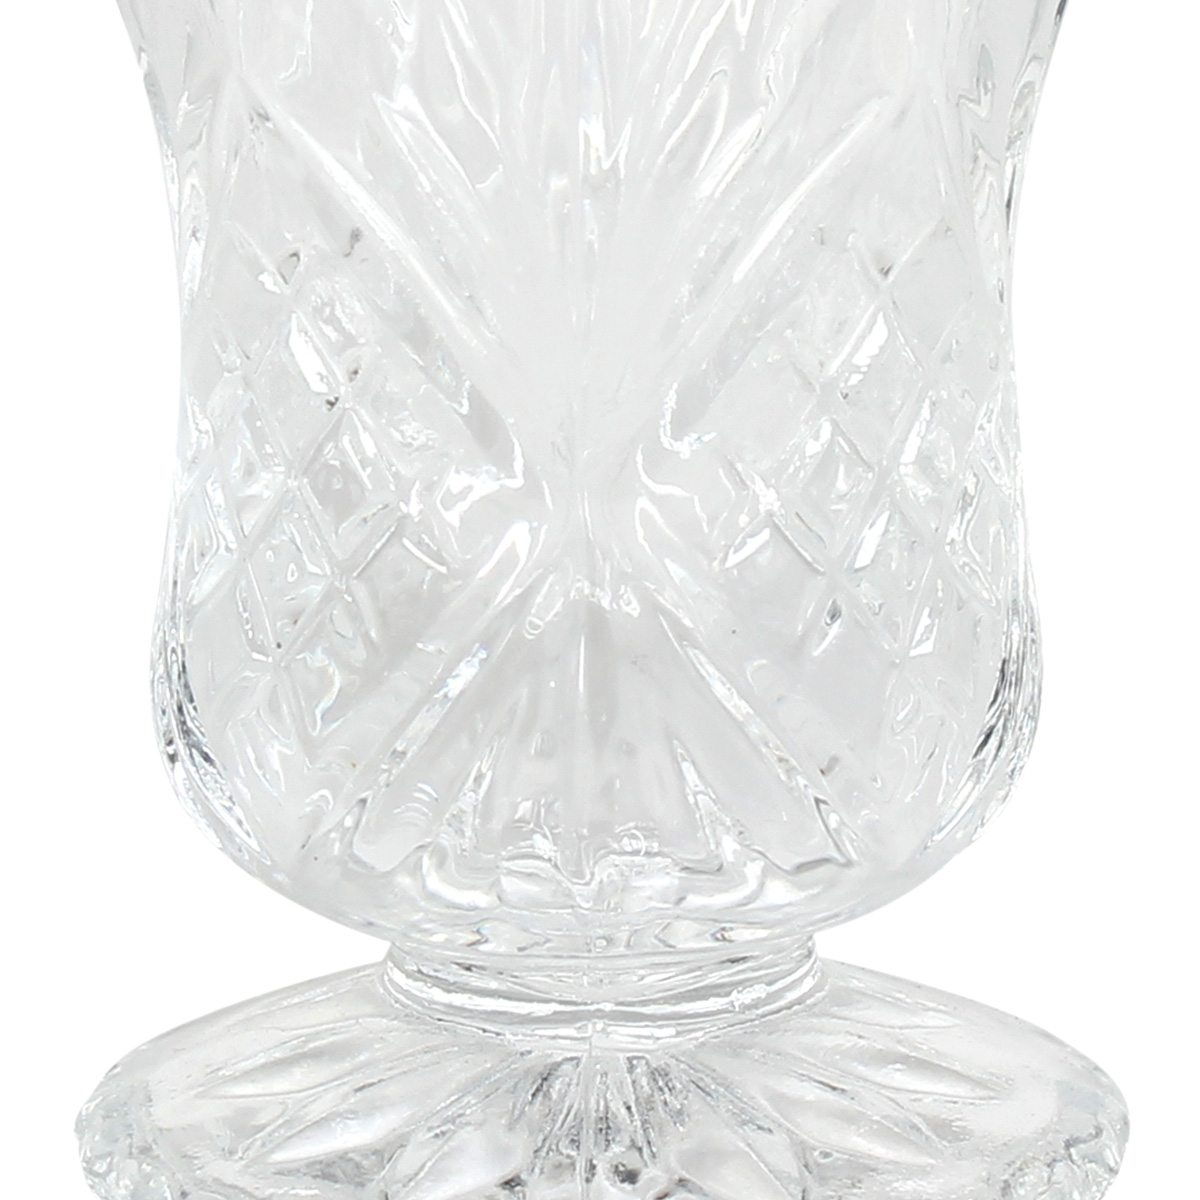 Ποτήρια σφηνάκι - λικέρ κολωνάτα γυάλινα τεμ. 6 60 ml Φ5,1Χ7,5 εκ. - KESKOR 61340